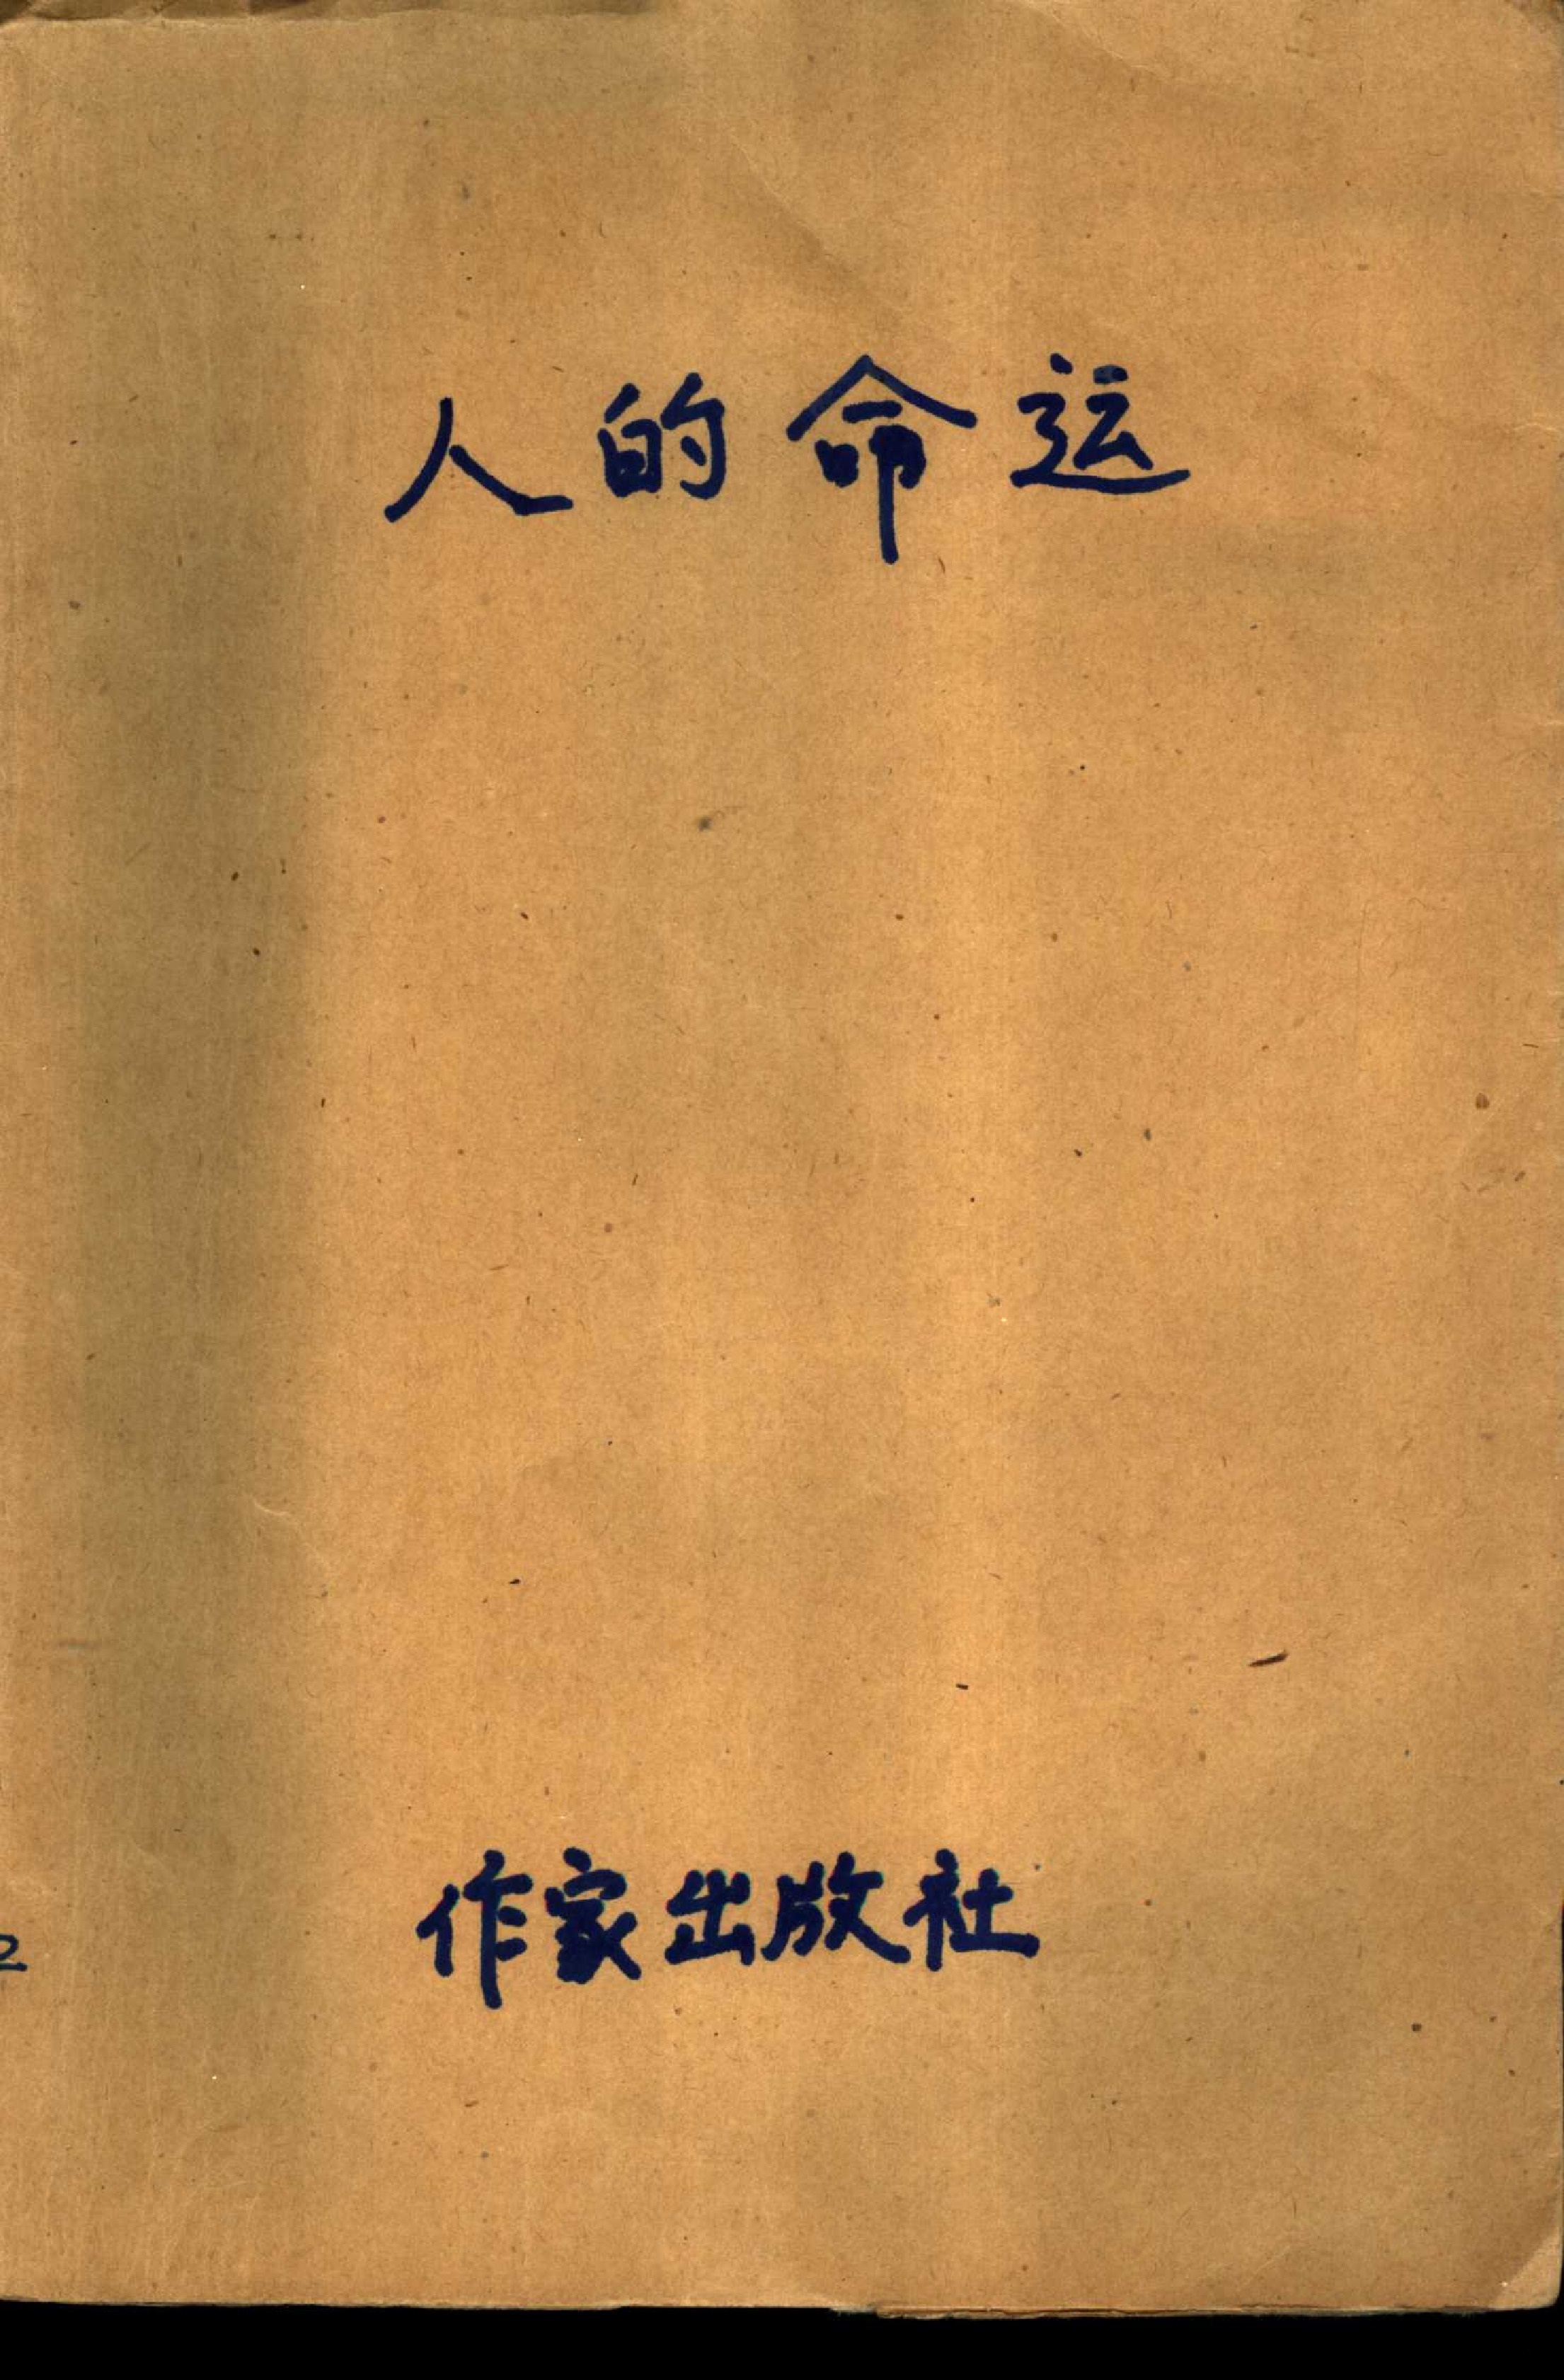 人的命运[法]马尔罗.李忆民、陈积盛译.作家出版社(1988)